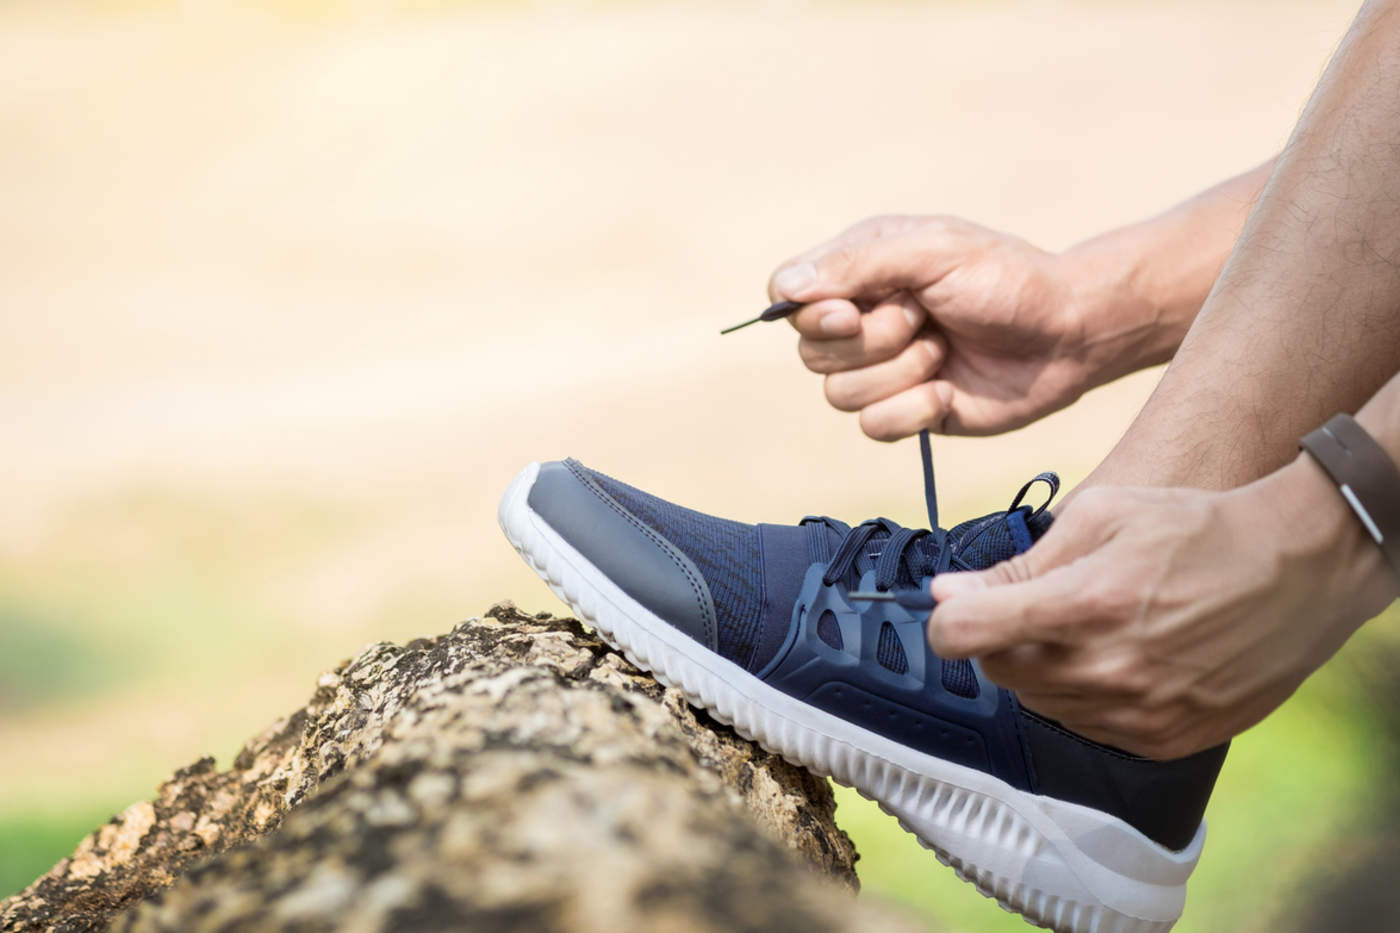 Unas zapatillas de deporte adecuadas servirán para proteger los pies de posibles roces, heridas o abrasiones que se puedan sufrir. (ARCHIVO)